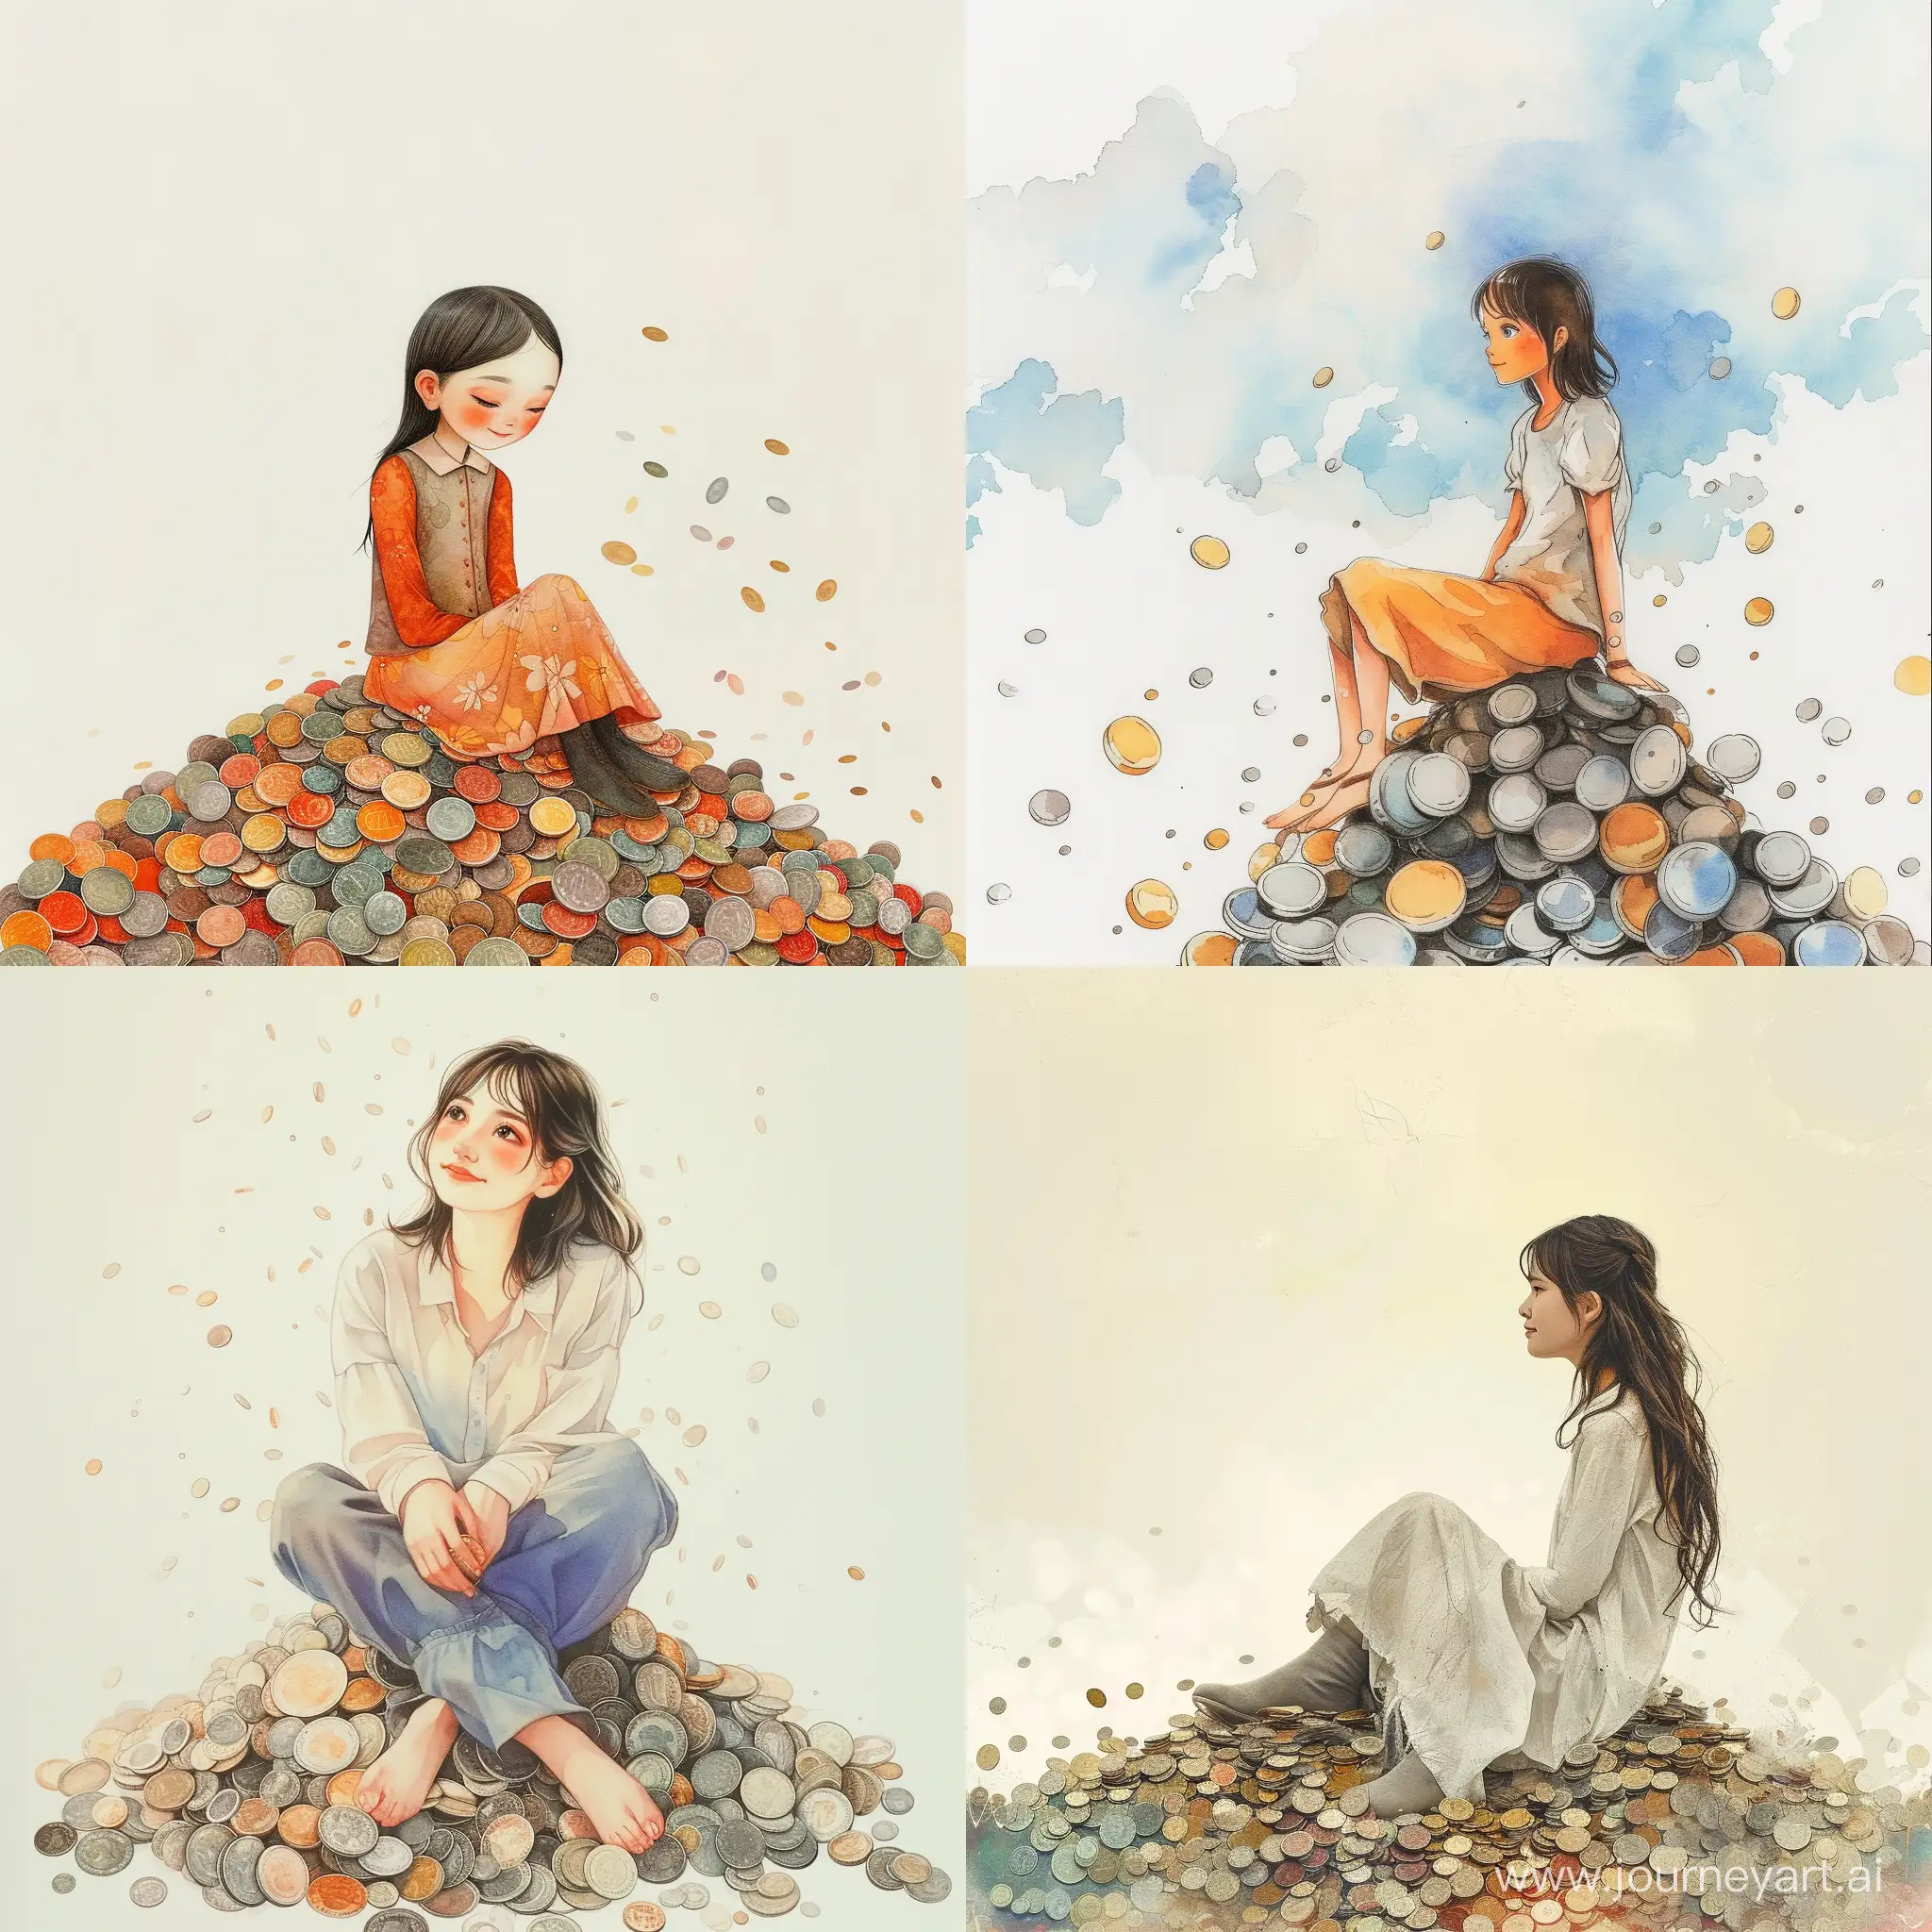 Девушка красивая сидит на горе из монет, нежные цвета, счастливая, изысканные черты лица, мило, цветное изображение, реалистичный рисунок
Дождь из монеток